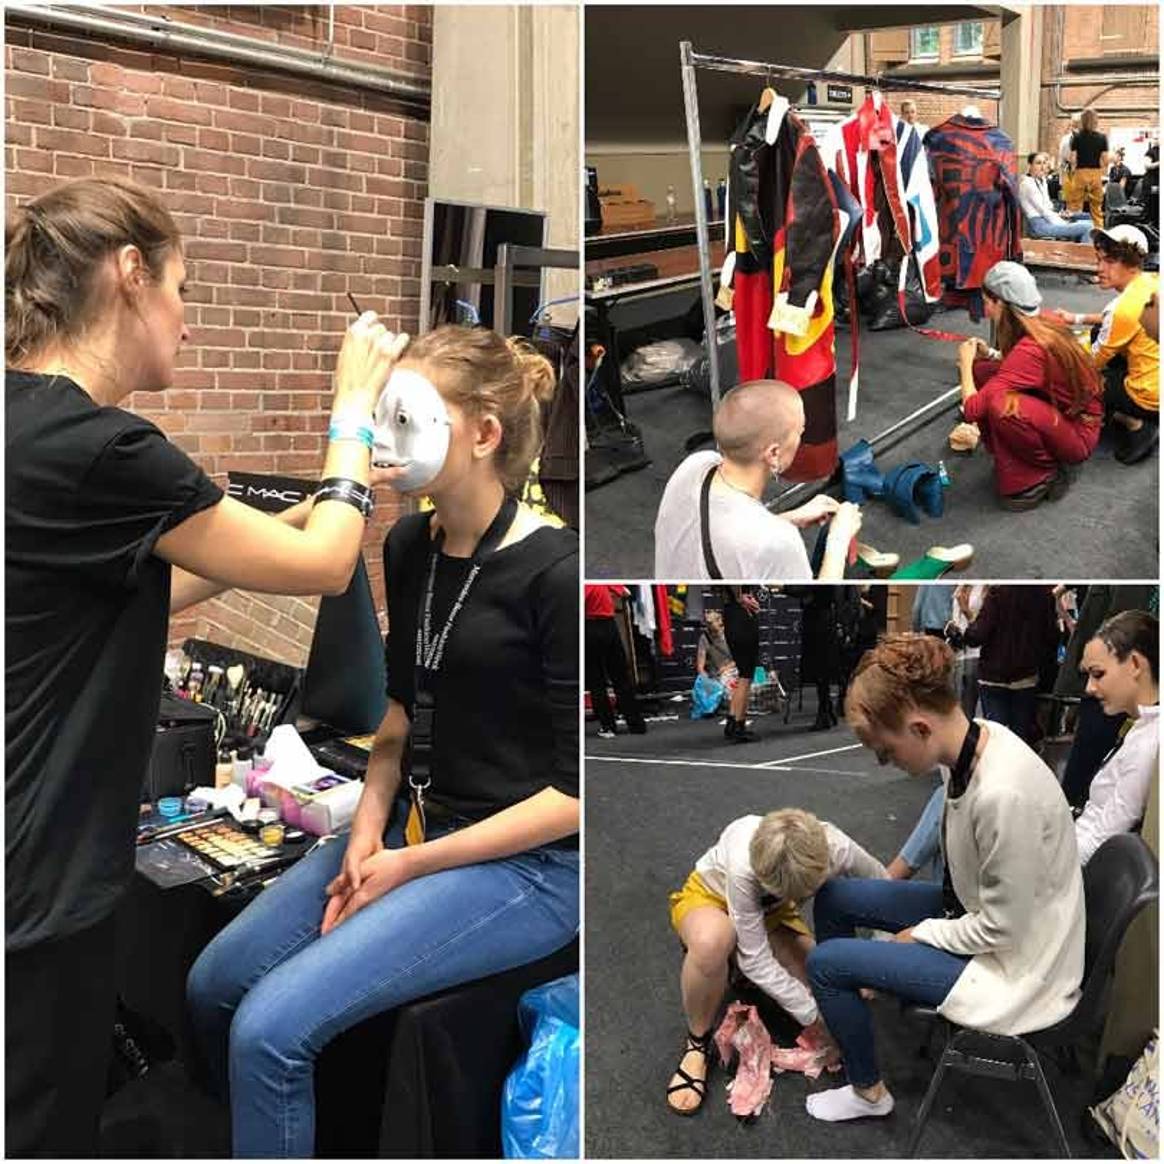 Amsterdam Fashion Week promoot hergebruik en recycling van kleding